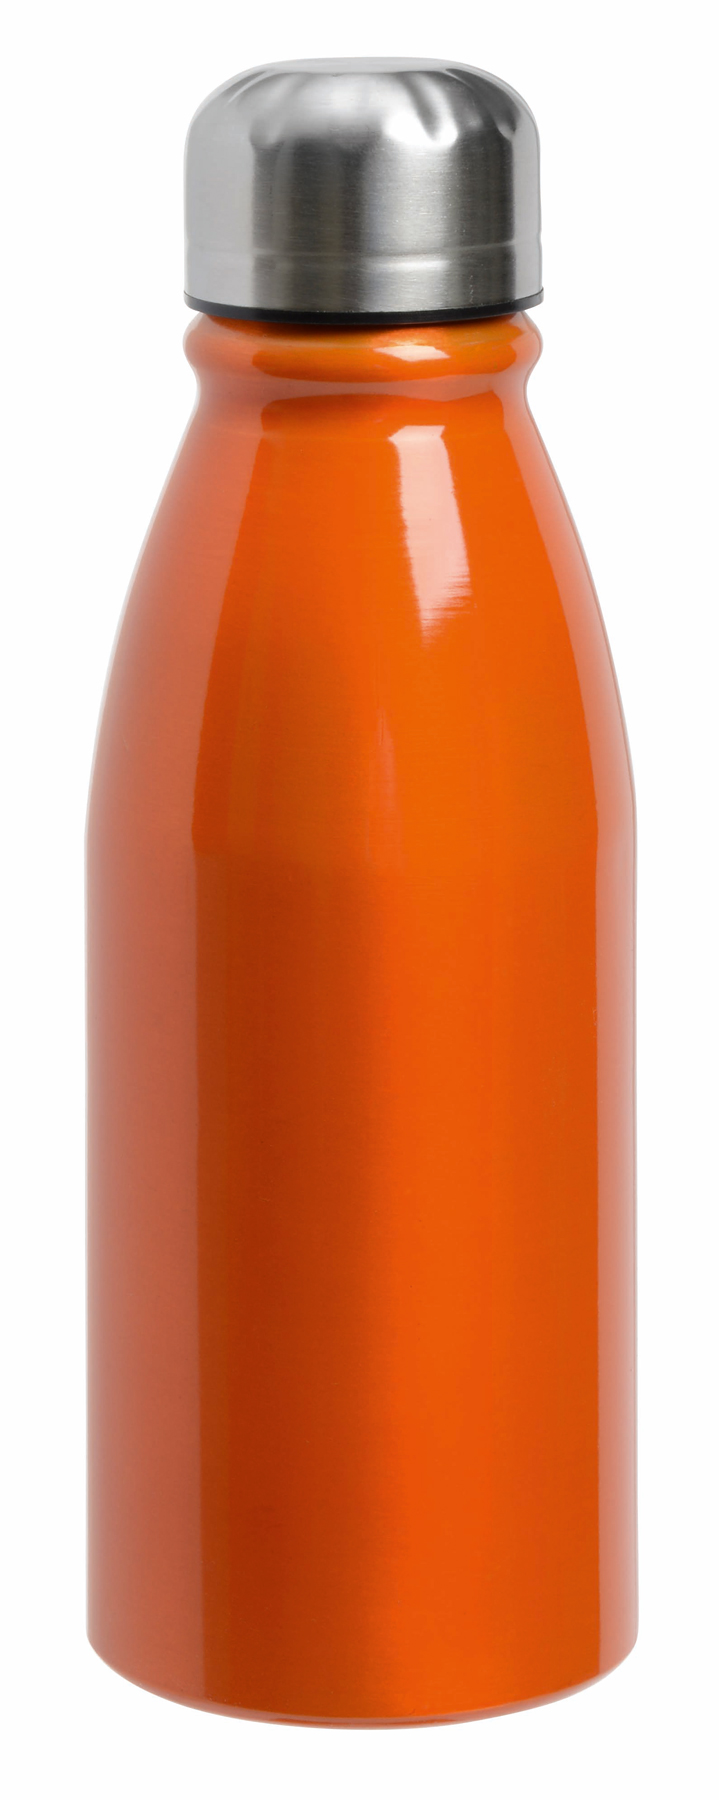 Aluminiowa butelka do picia FANCY, pojemność ok. 500 ml.